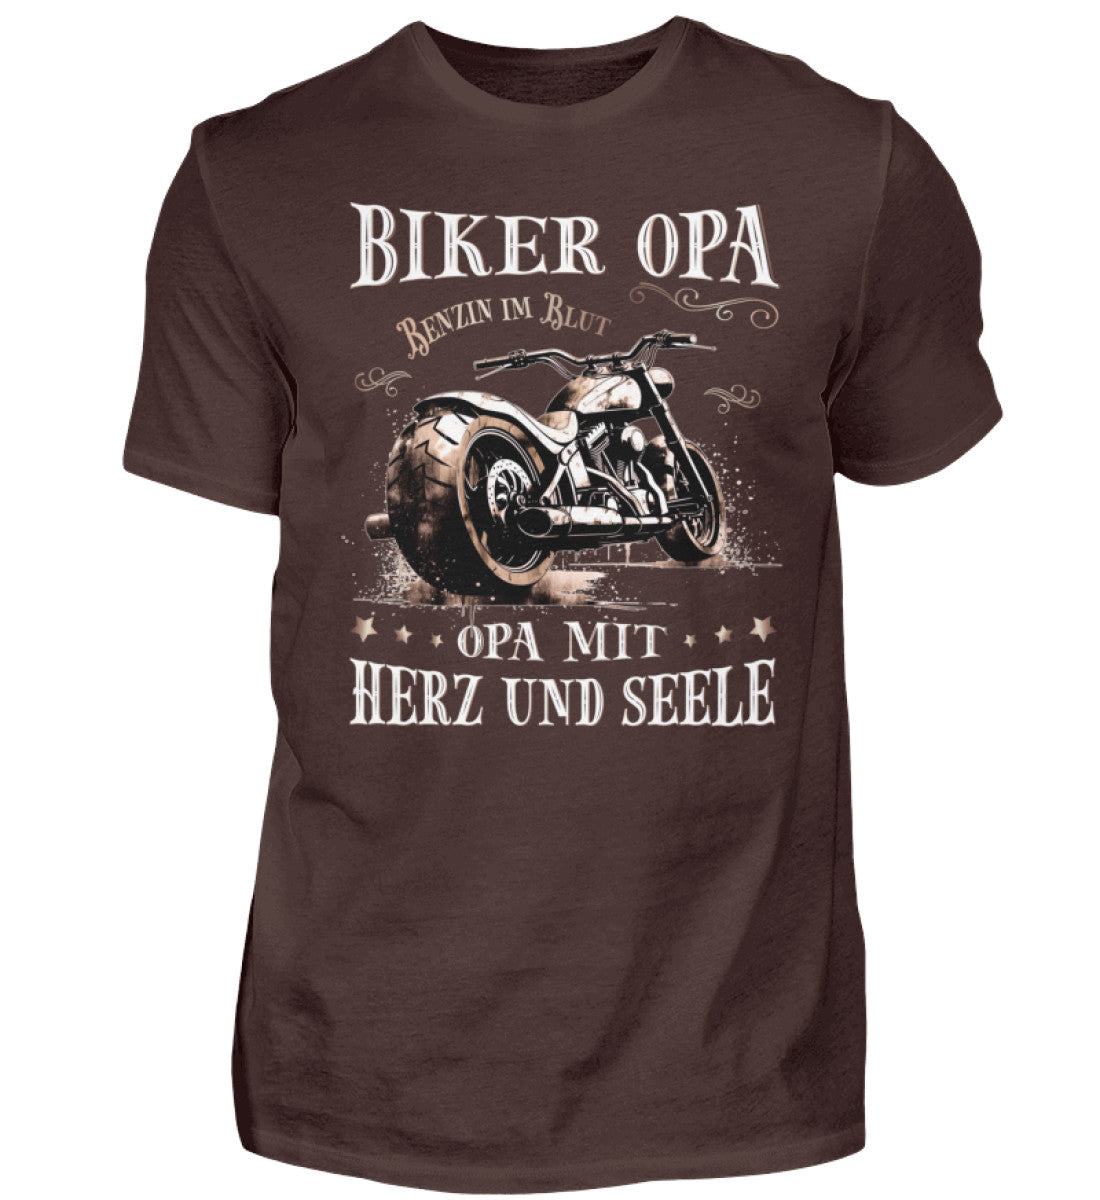 Ein Biker T-Shirt für Motorradfahrer von Wingbikers mit dem Aufdruck, Biker Opa - Benzin im Blut - Opa mit Herz und Seele, in braun.